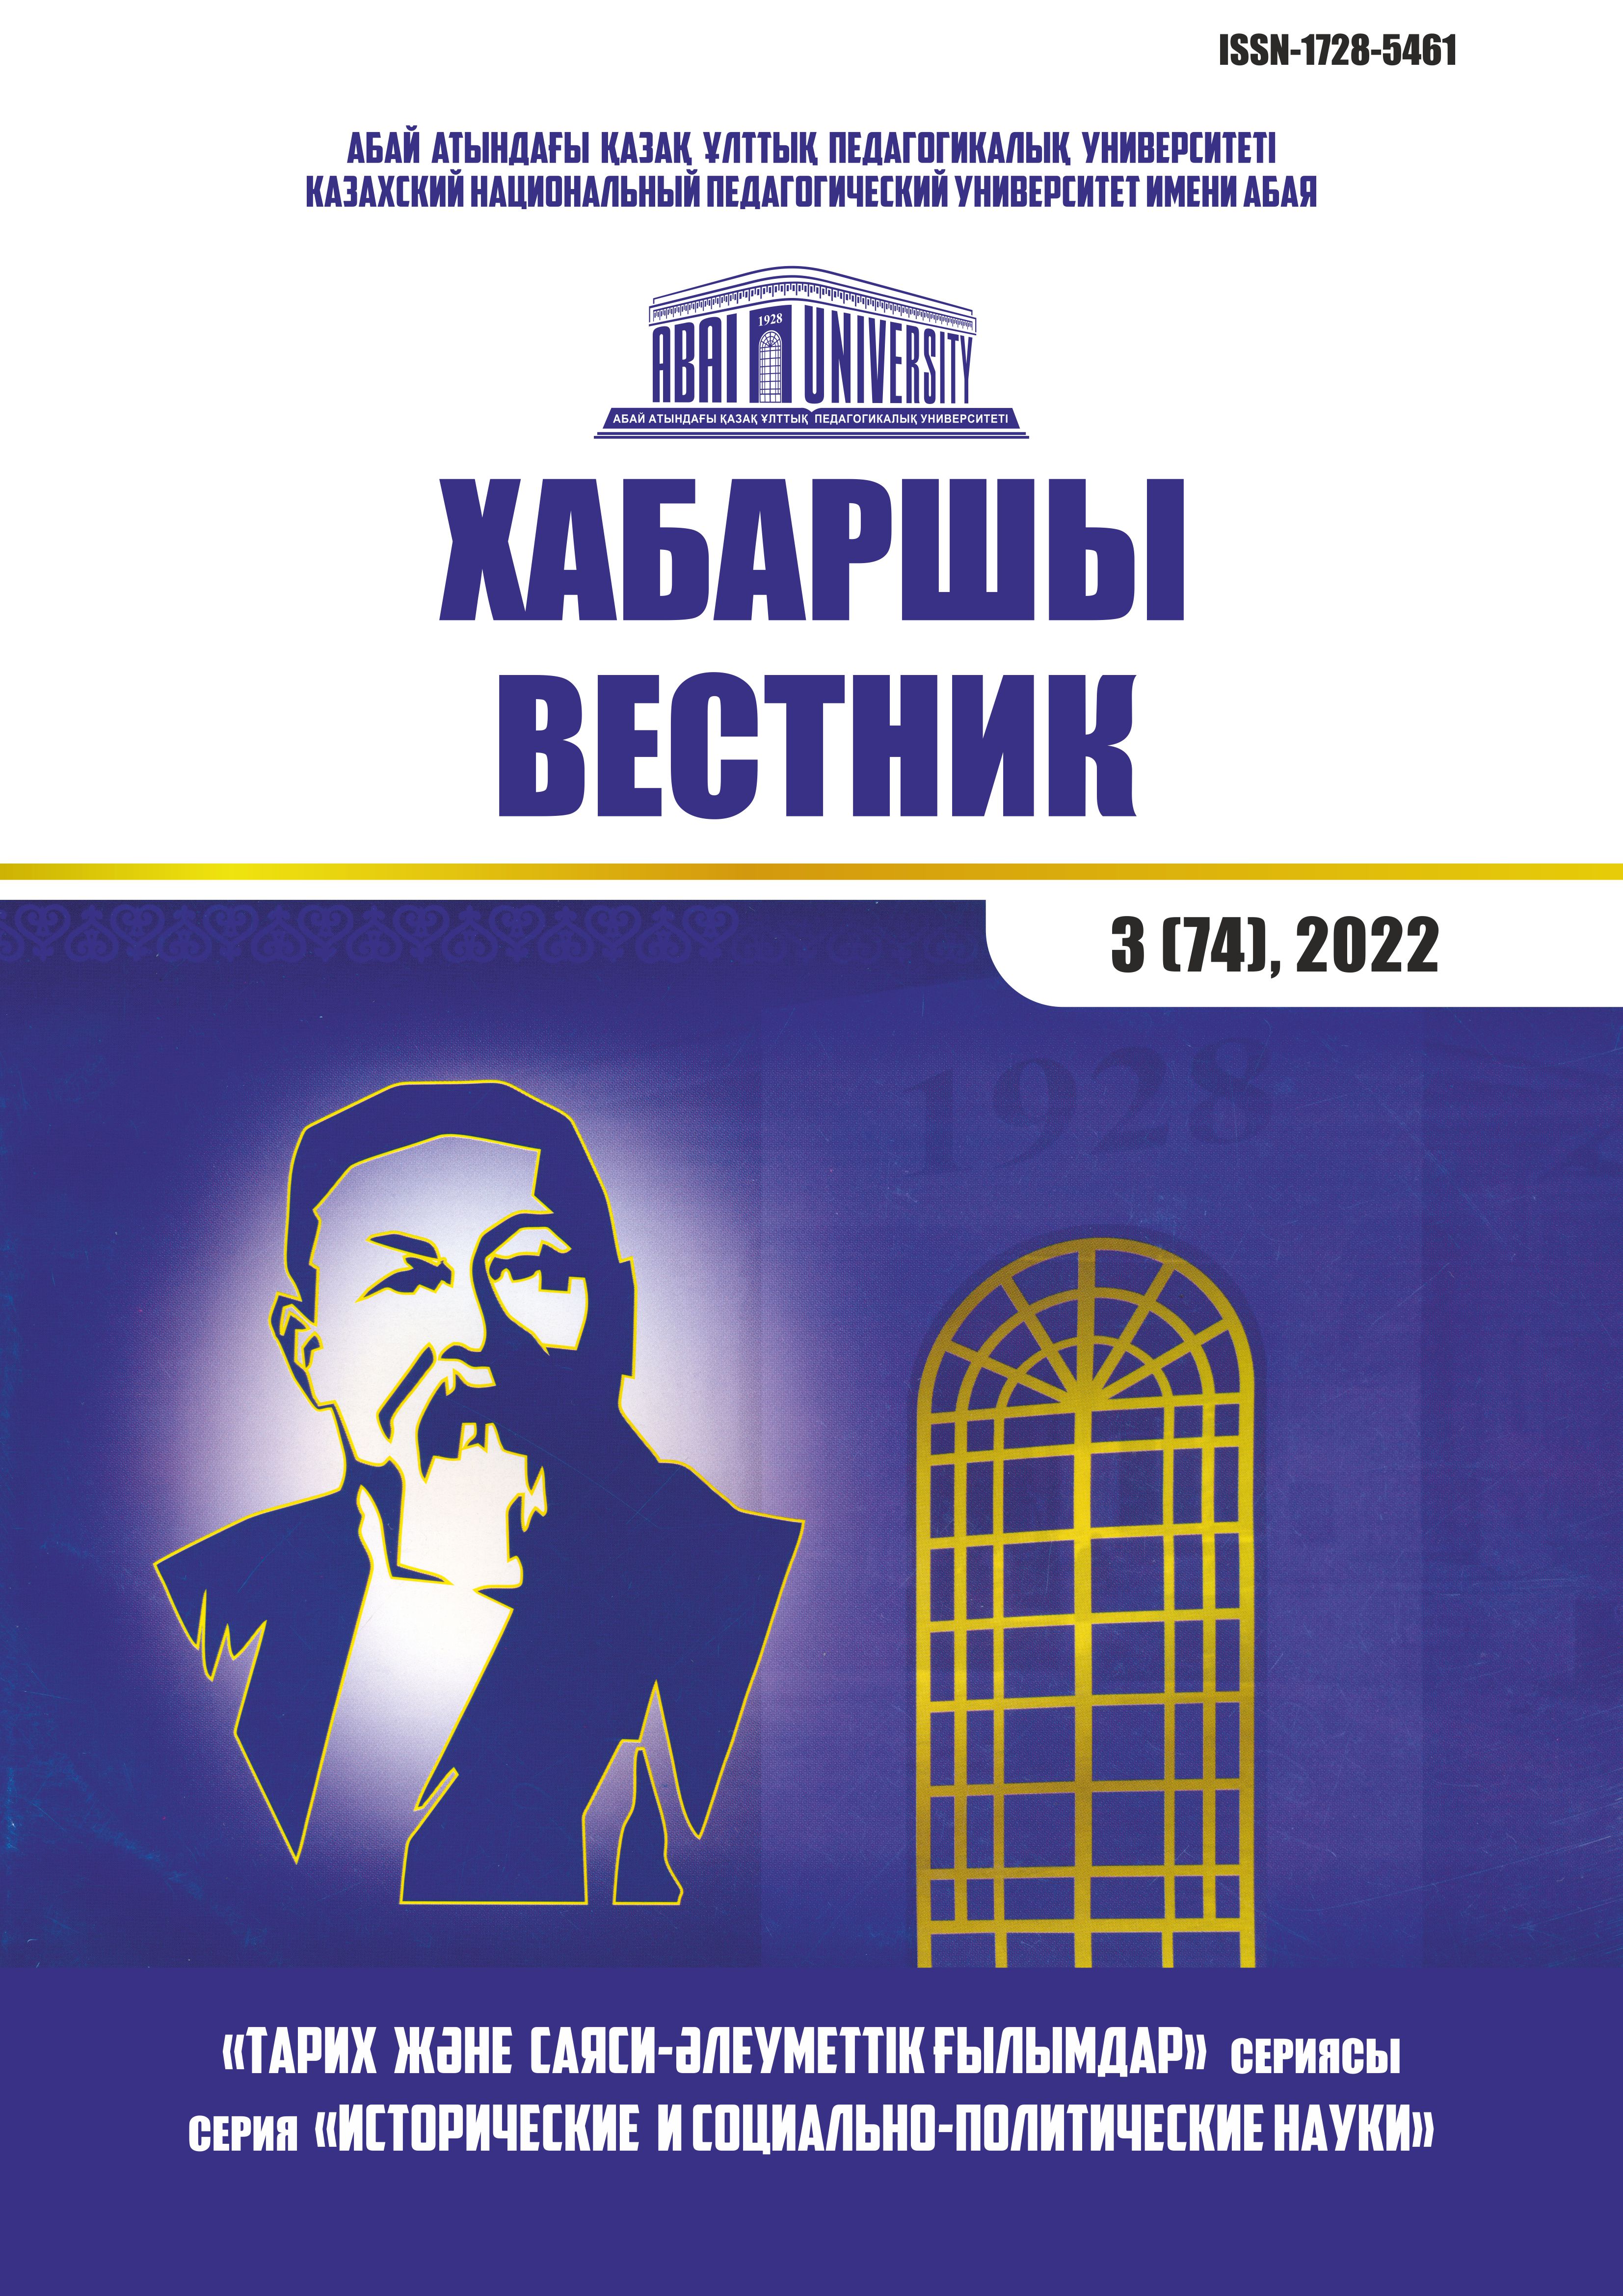 					Показать Том 3 № 74 (2022): Серия «Исторические и социально-политические науки»
				